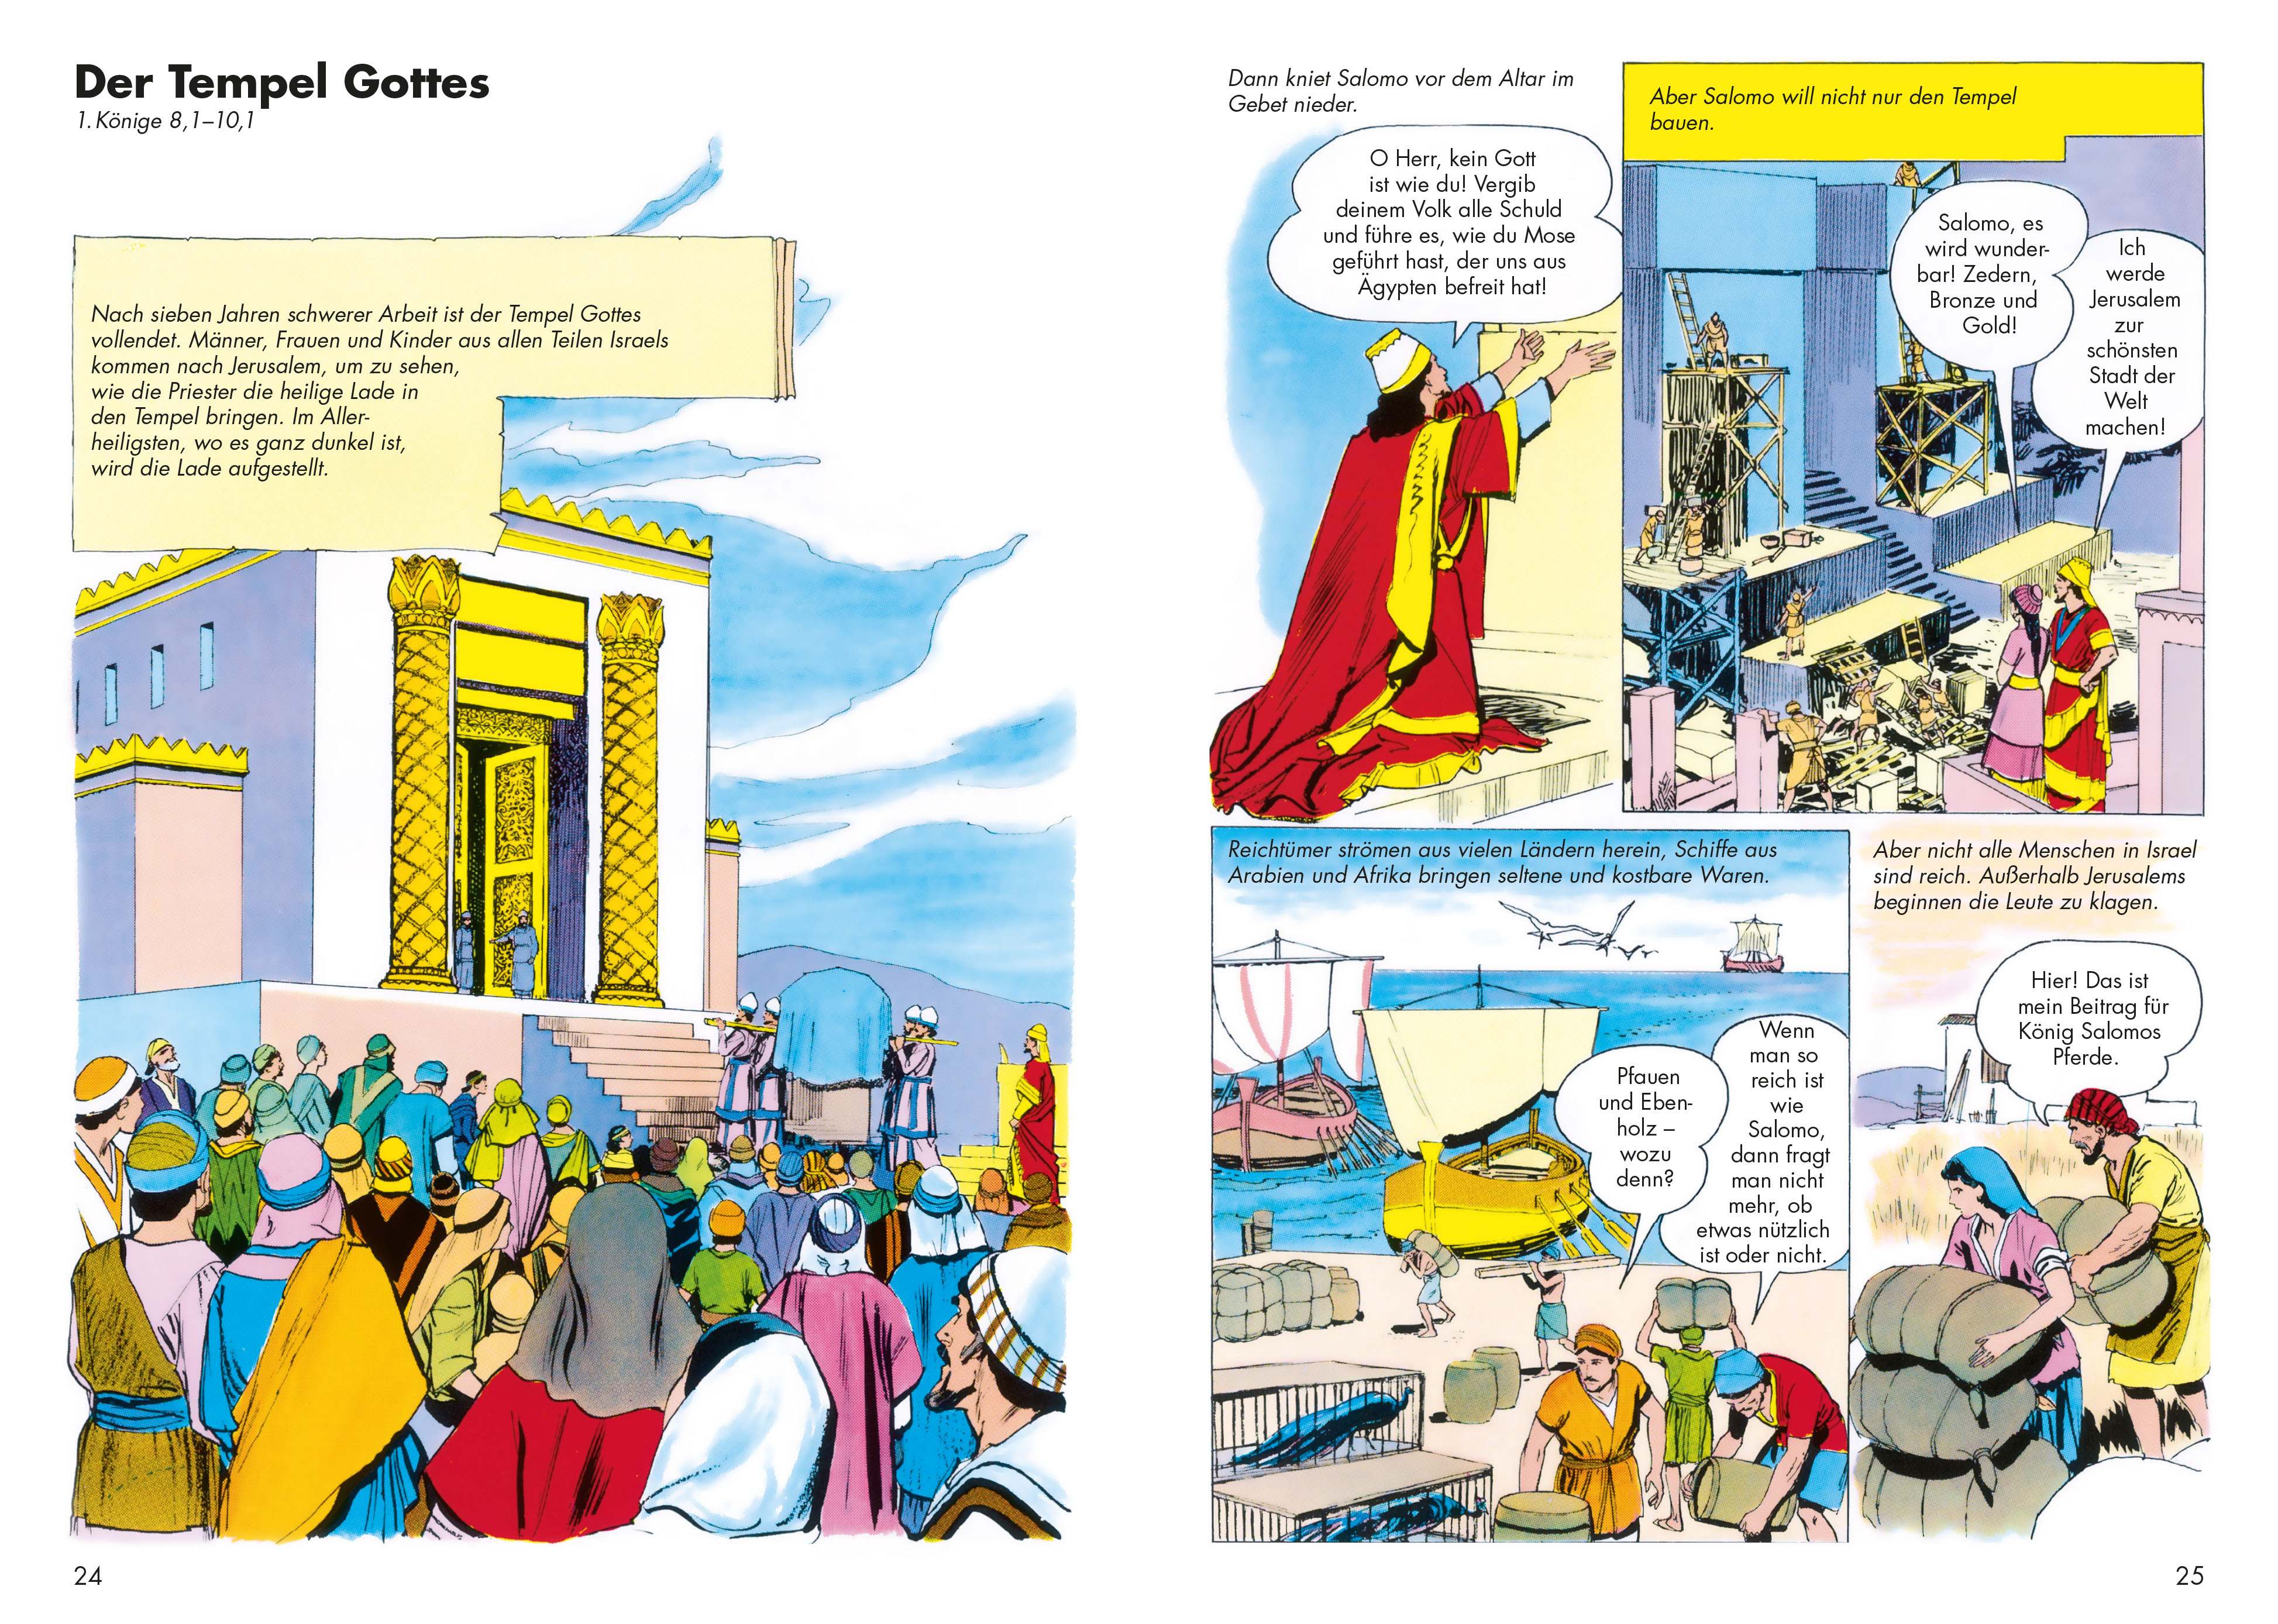 Comic-Reihe »Die Bibel im Bild« – Heft 6: Antwort mit Feuer 